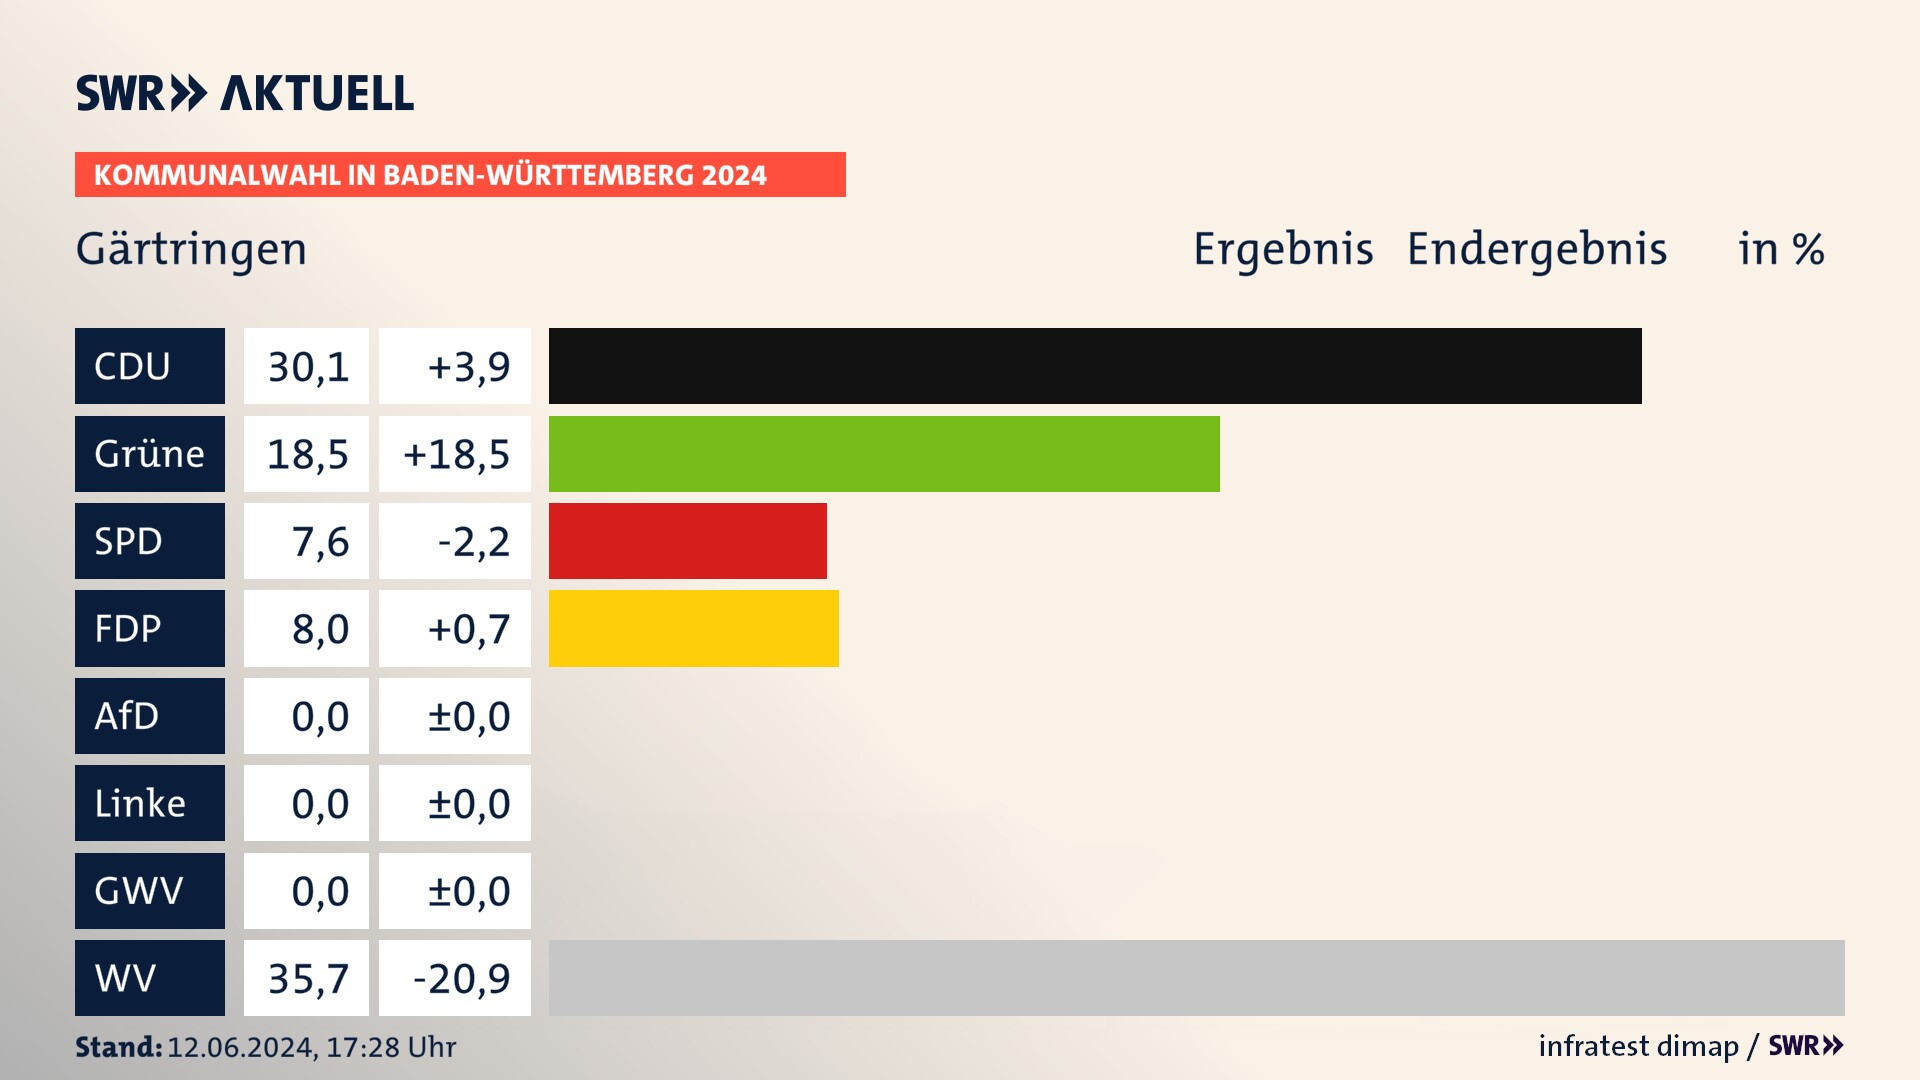 Kommunalwahl 2024 Endergebnis Zweitstimme für Gärtringen. In Gärtringen erzielt die CDU 30,1 Prozent der gültigen  Stimmen. Die Grünen landen bei 18,5 Prozent. Die SPD erreicht 7,6 Prozent. Die FDP kommt auf 8,0 Prozent. Die Wählervereinigungen landen bei 35,7 Prozent.